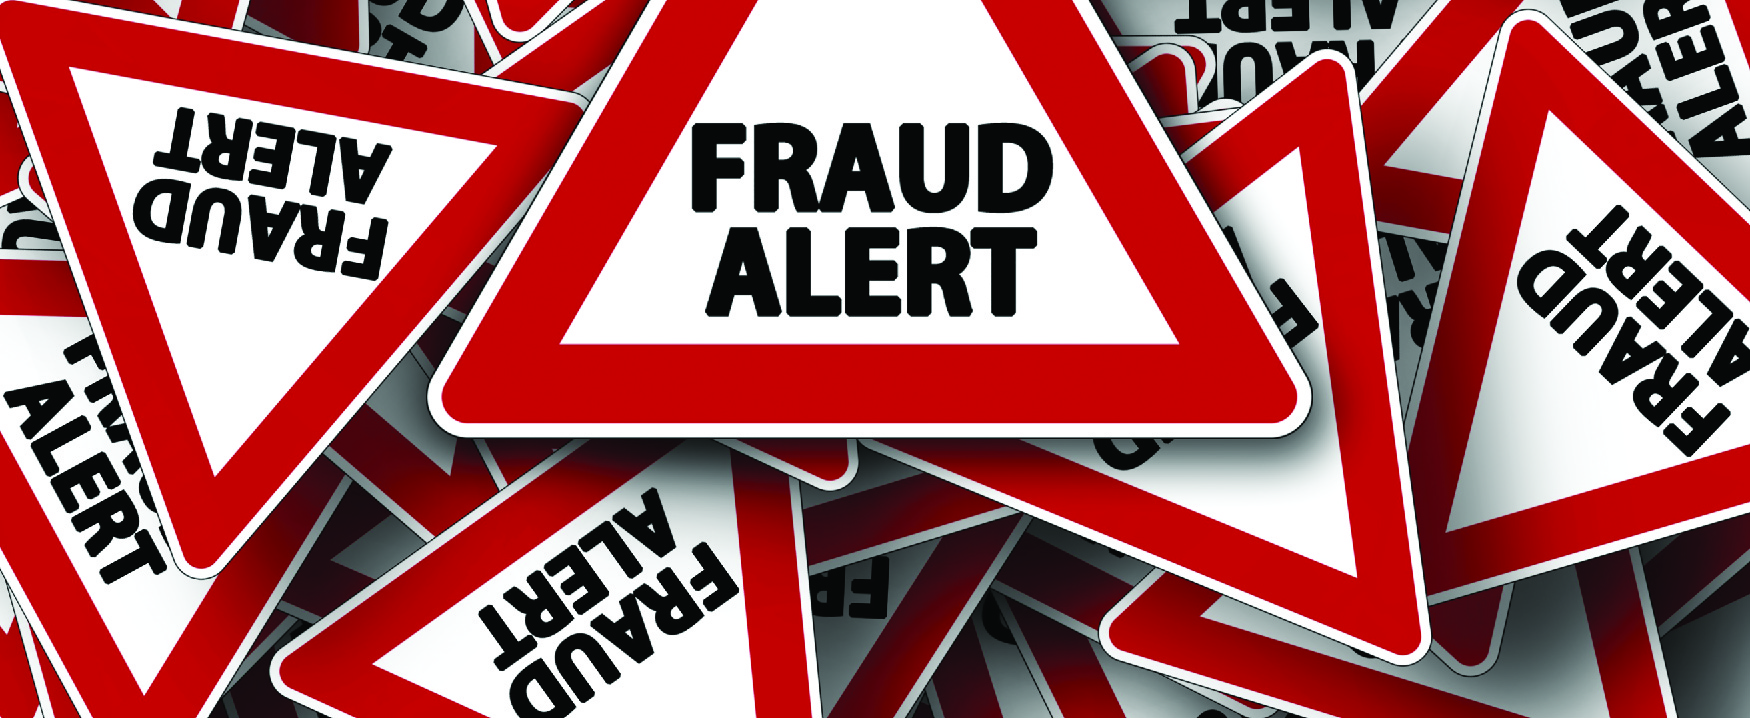 Triângulos vermelhos com as palavras “Alerta de fraude”, todos sobrepostos.